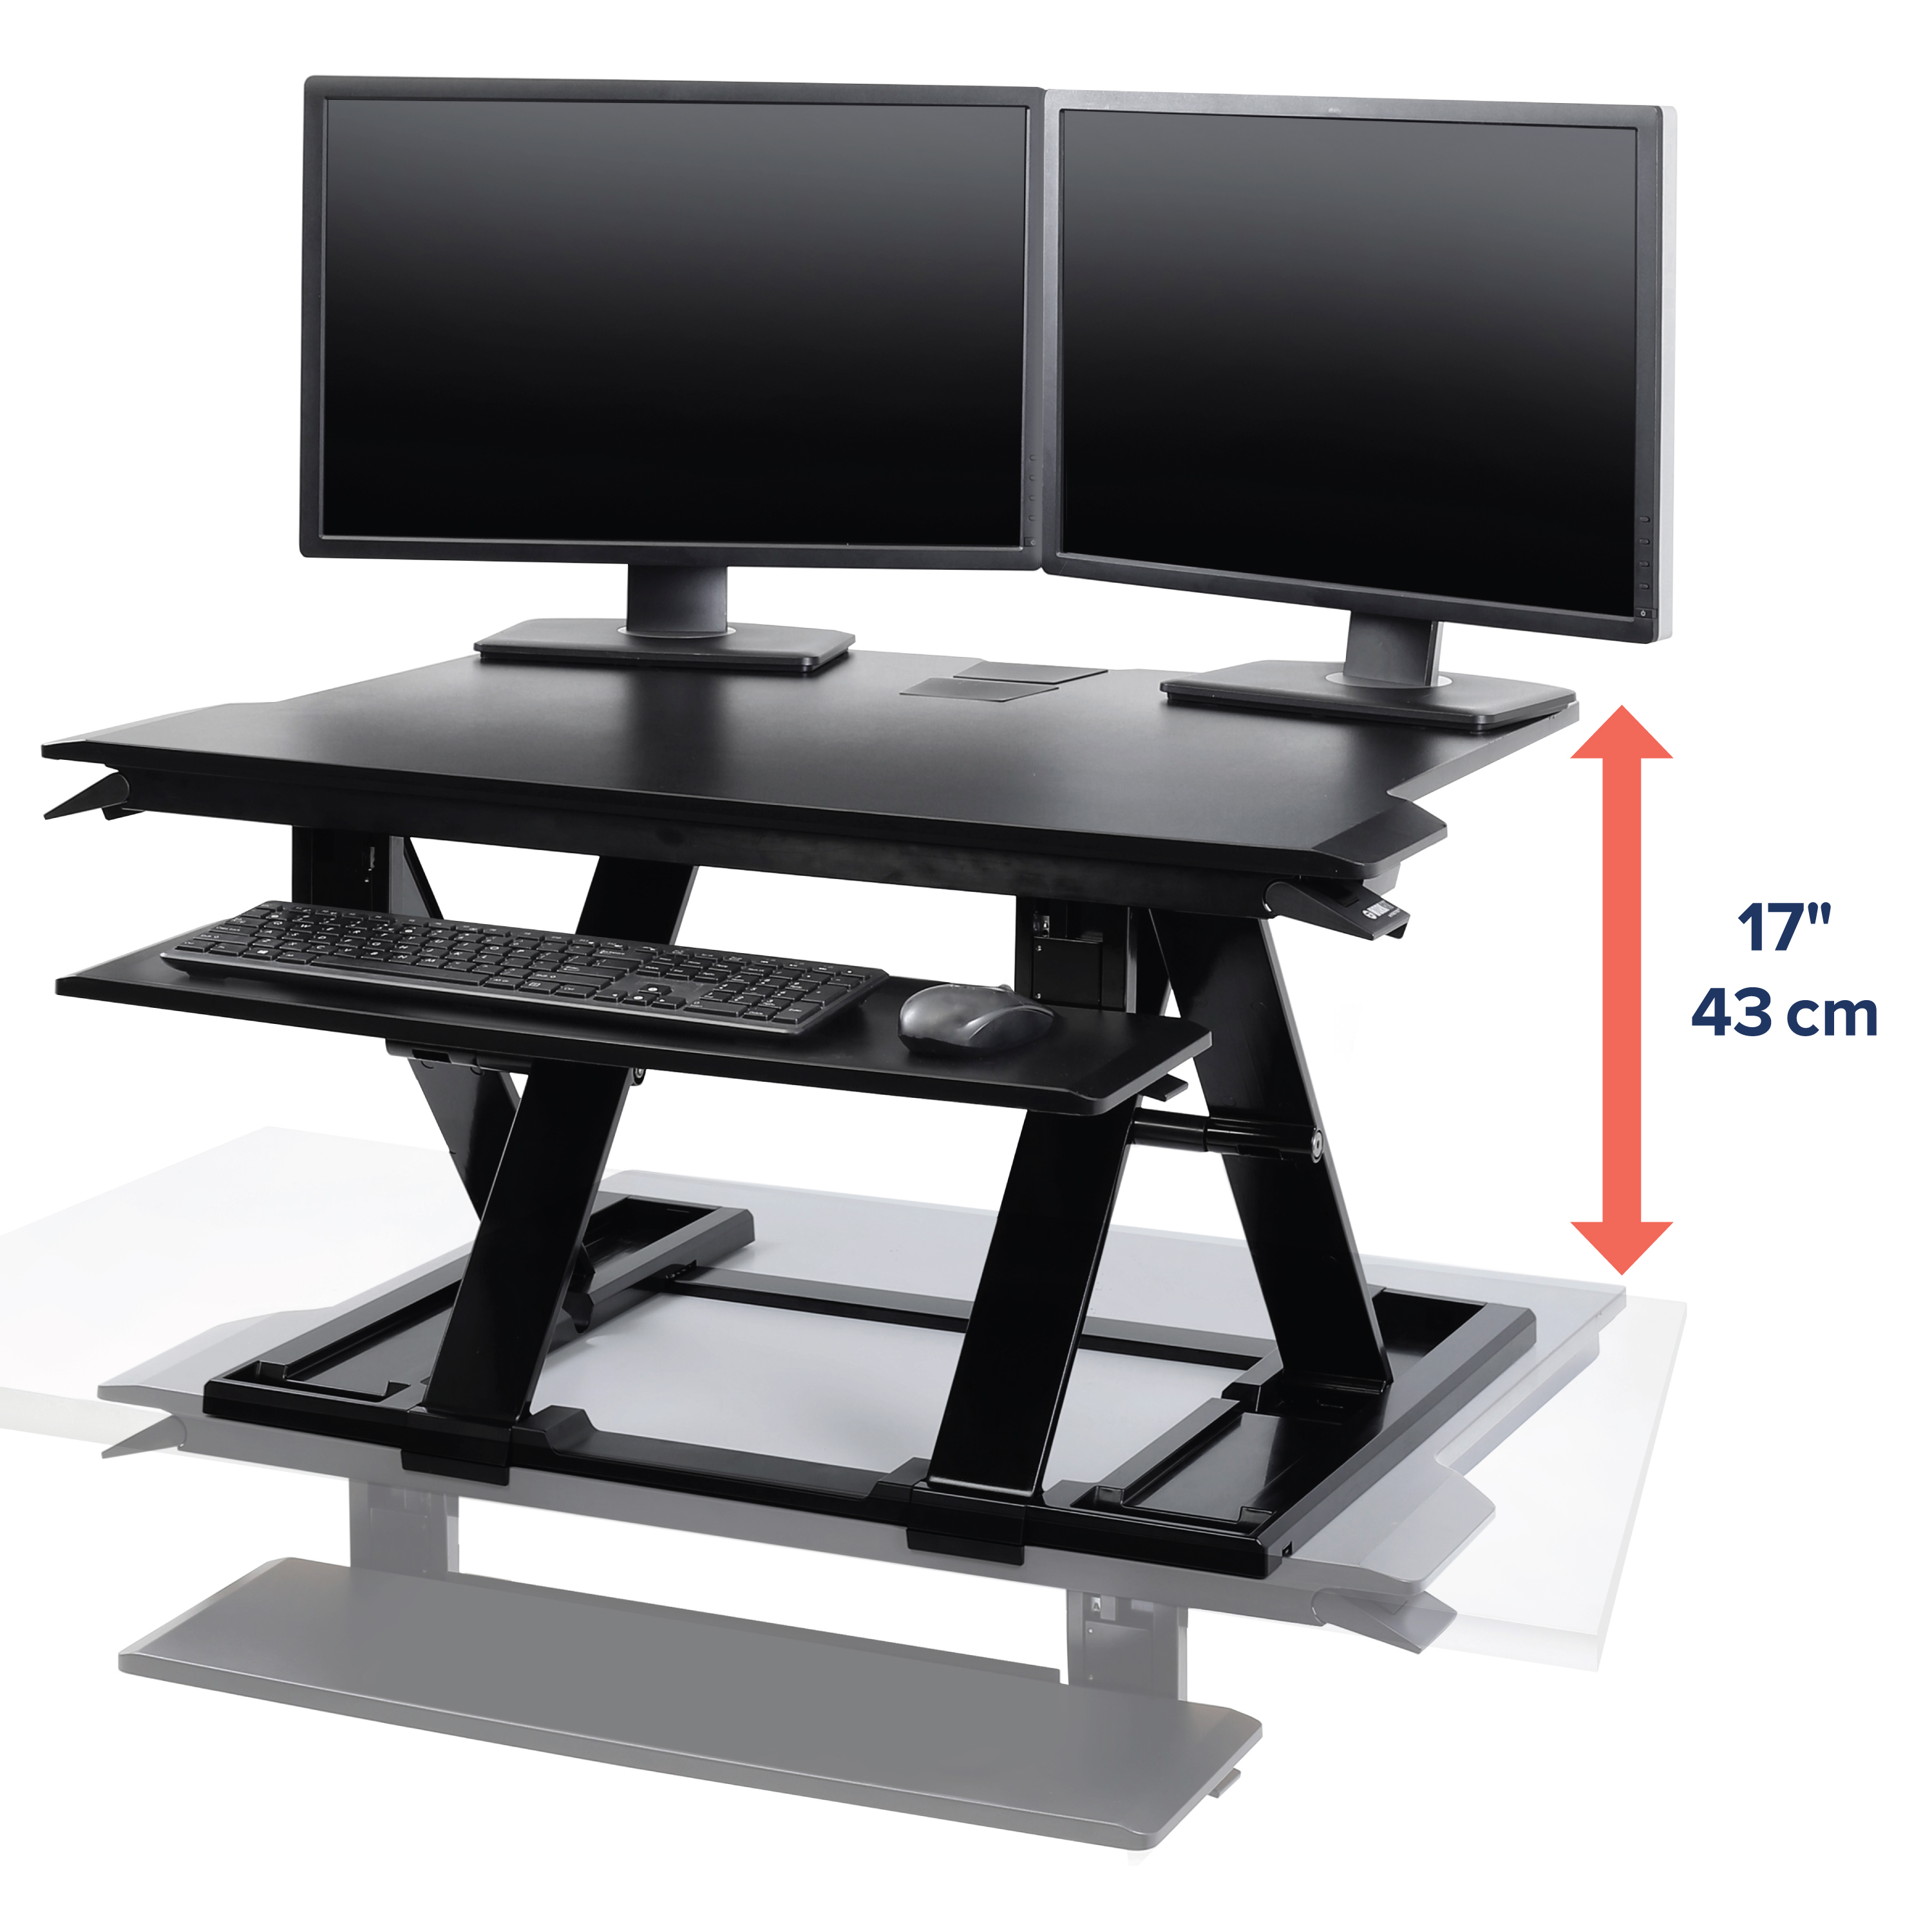 Betterwork - Elevador de escritorio para trabajar de pie o sentado2, color  blanco